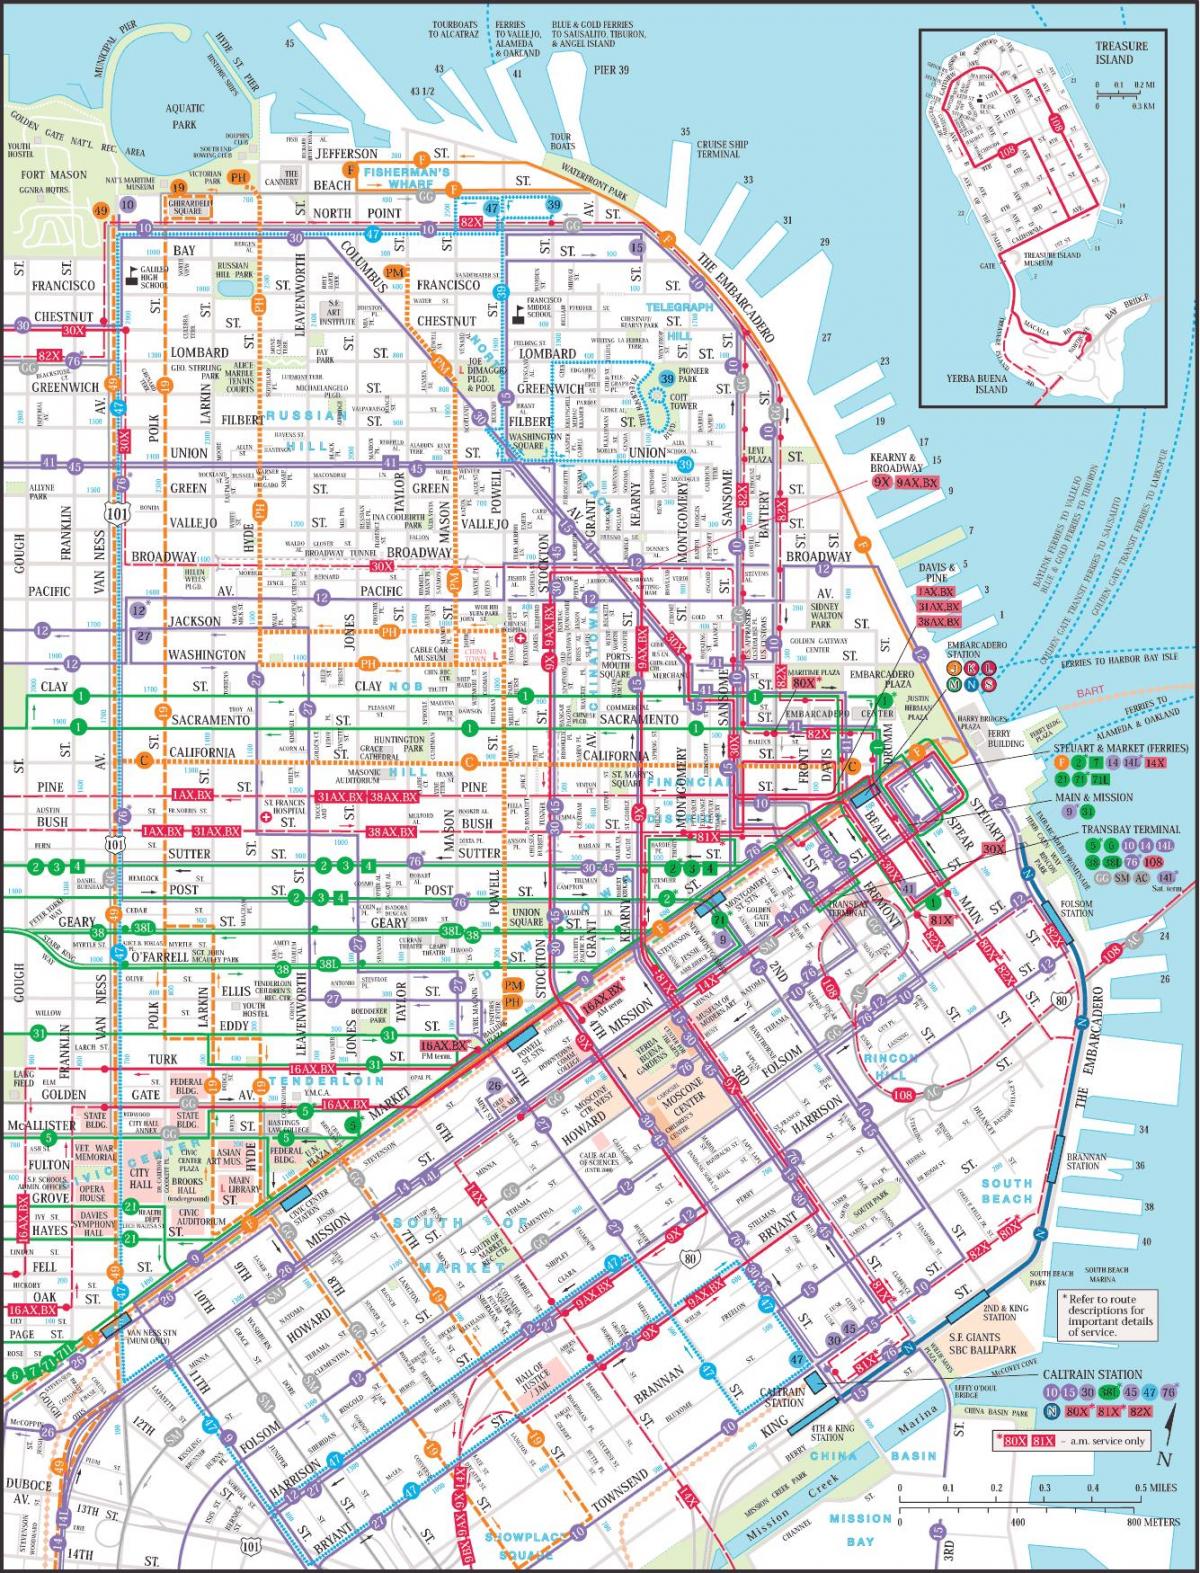 San Francisco საჯარო სატრანზიტო რუკა